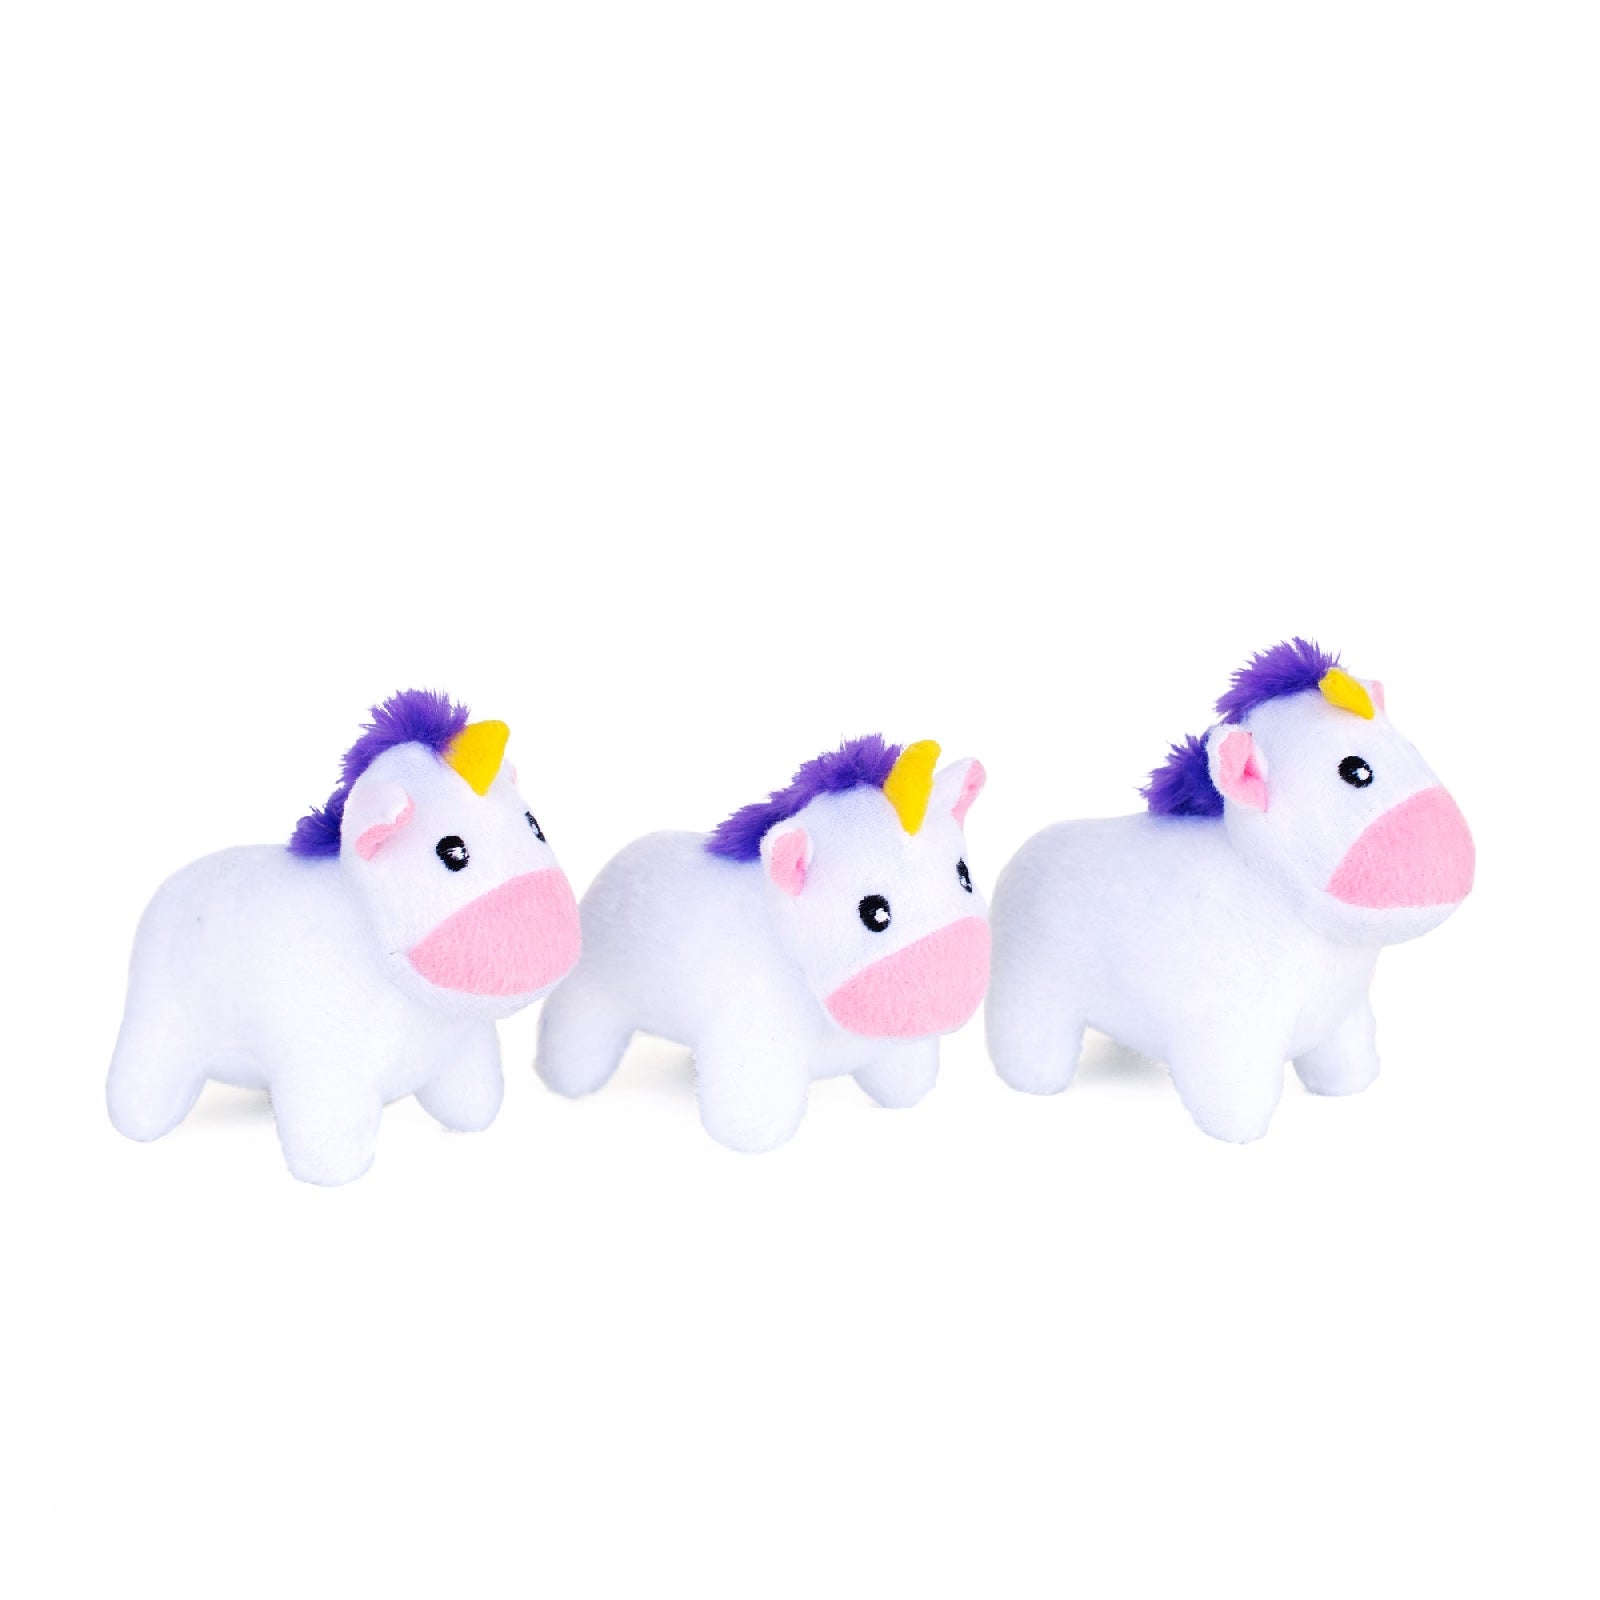 ZIPPY PAWS -  Zippy Burrows Unicorns in Rainbow Dog Toy